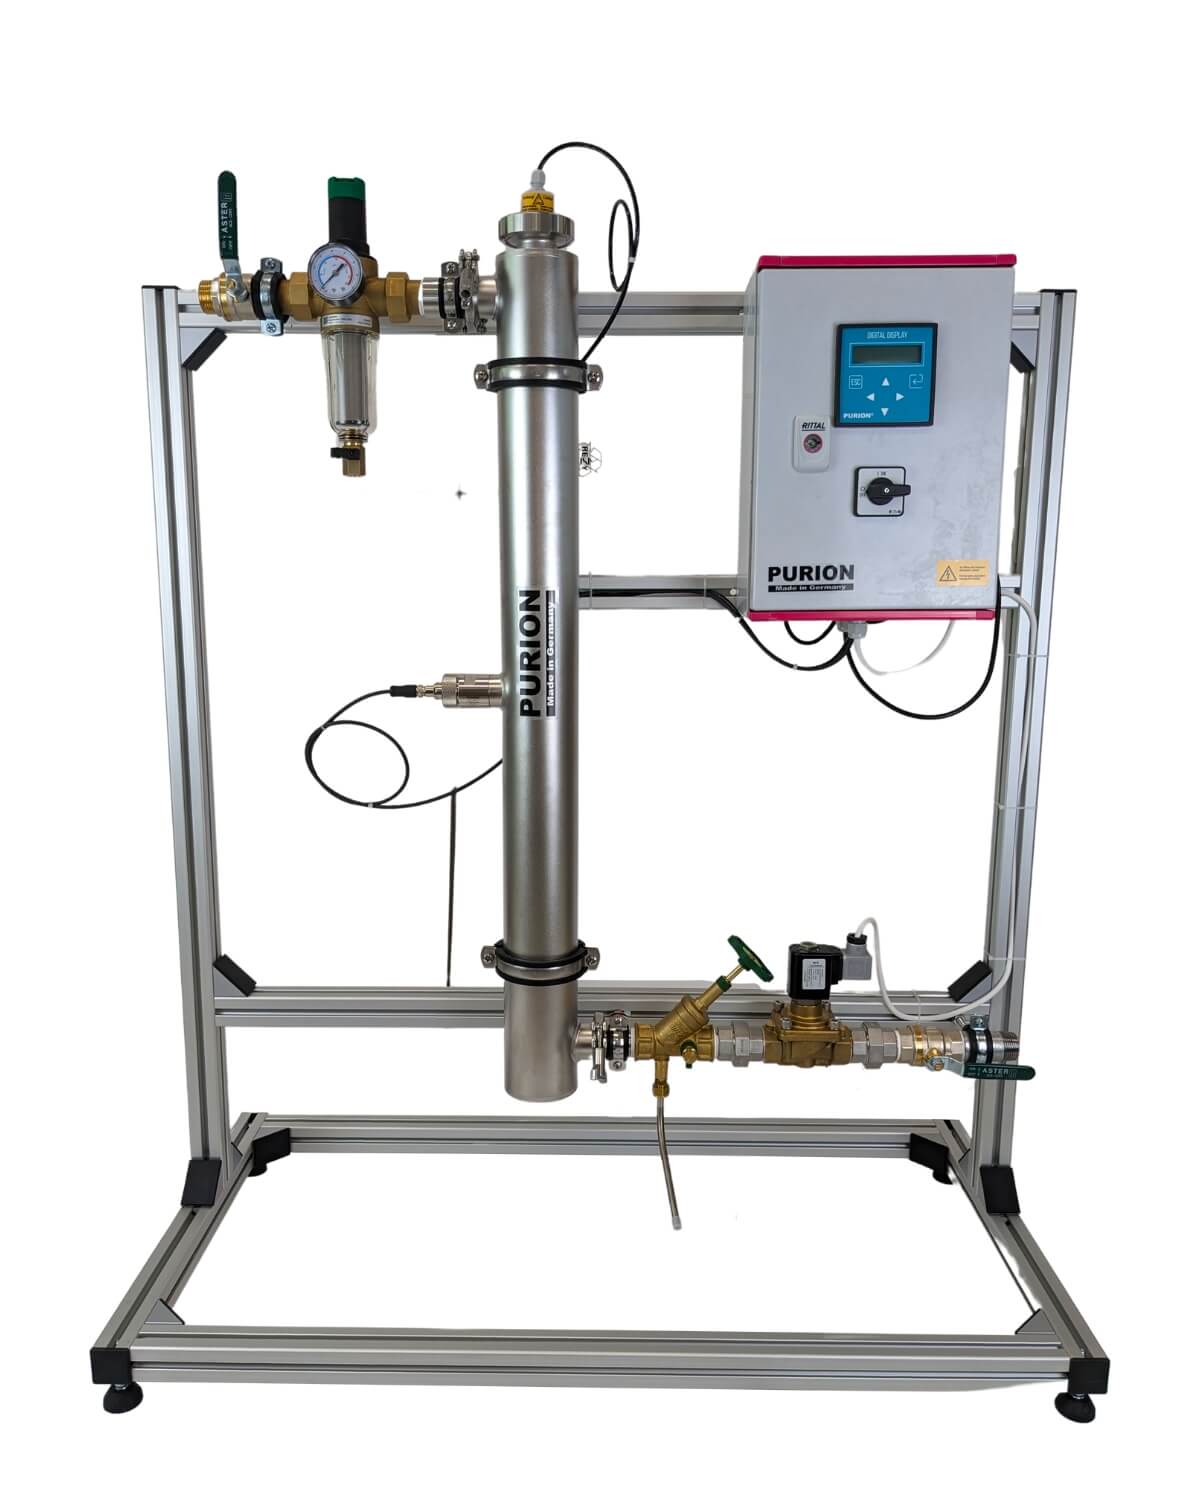 Eine Maschine mit zwei Ventilen und einem Manometer darauf, konzipiert für die UVC-Anlage und Desinfektion von Trinkwasser, die PURION DVGW Zert. Alles in einem von der PURION GmbH.